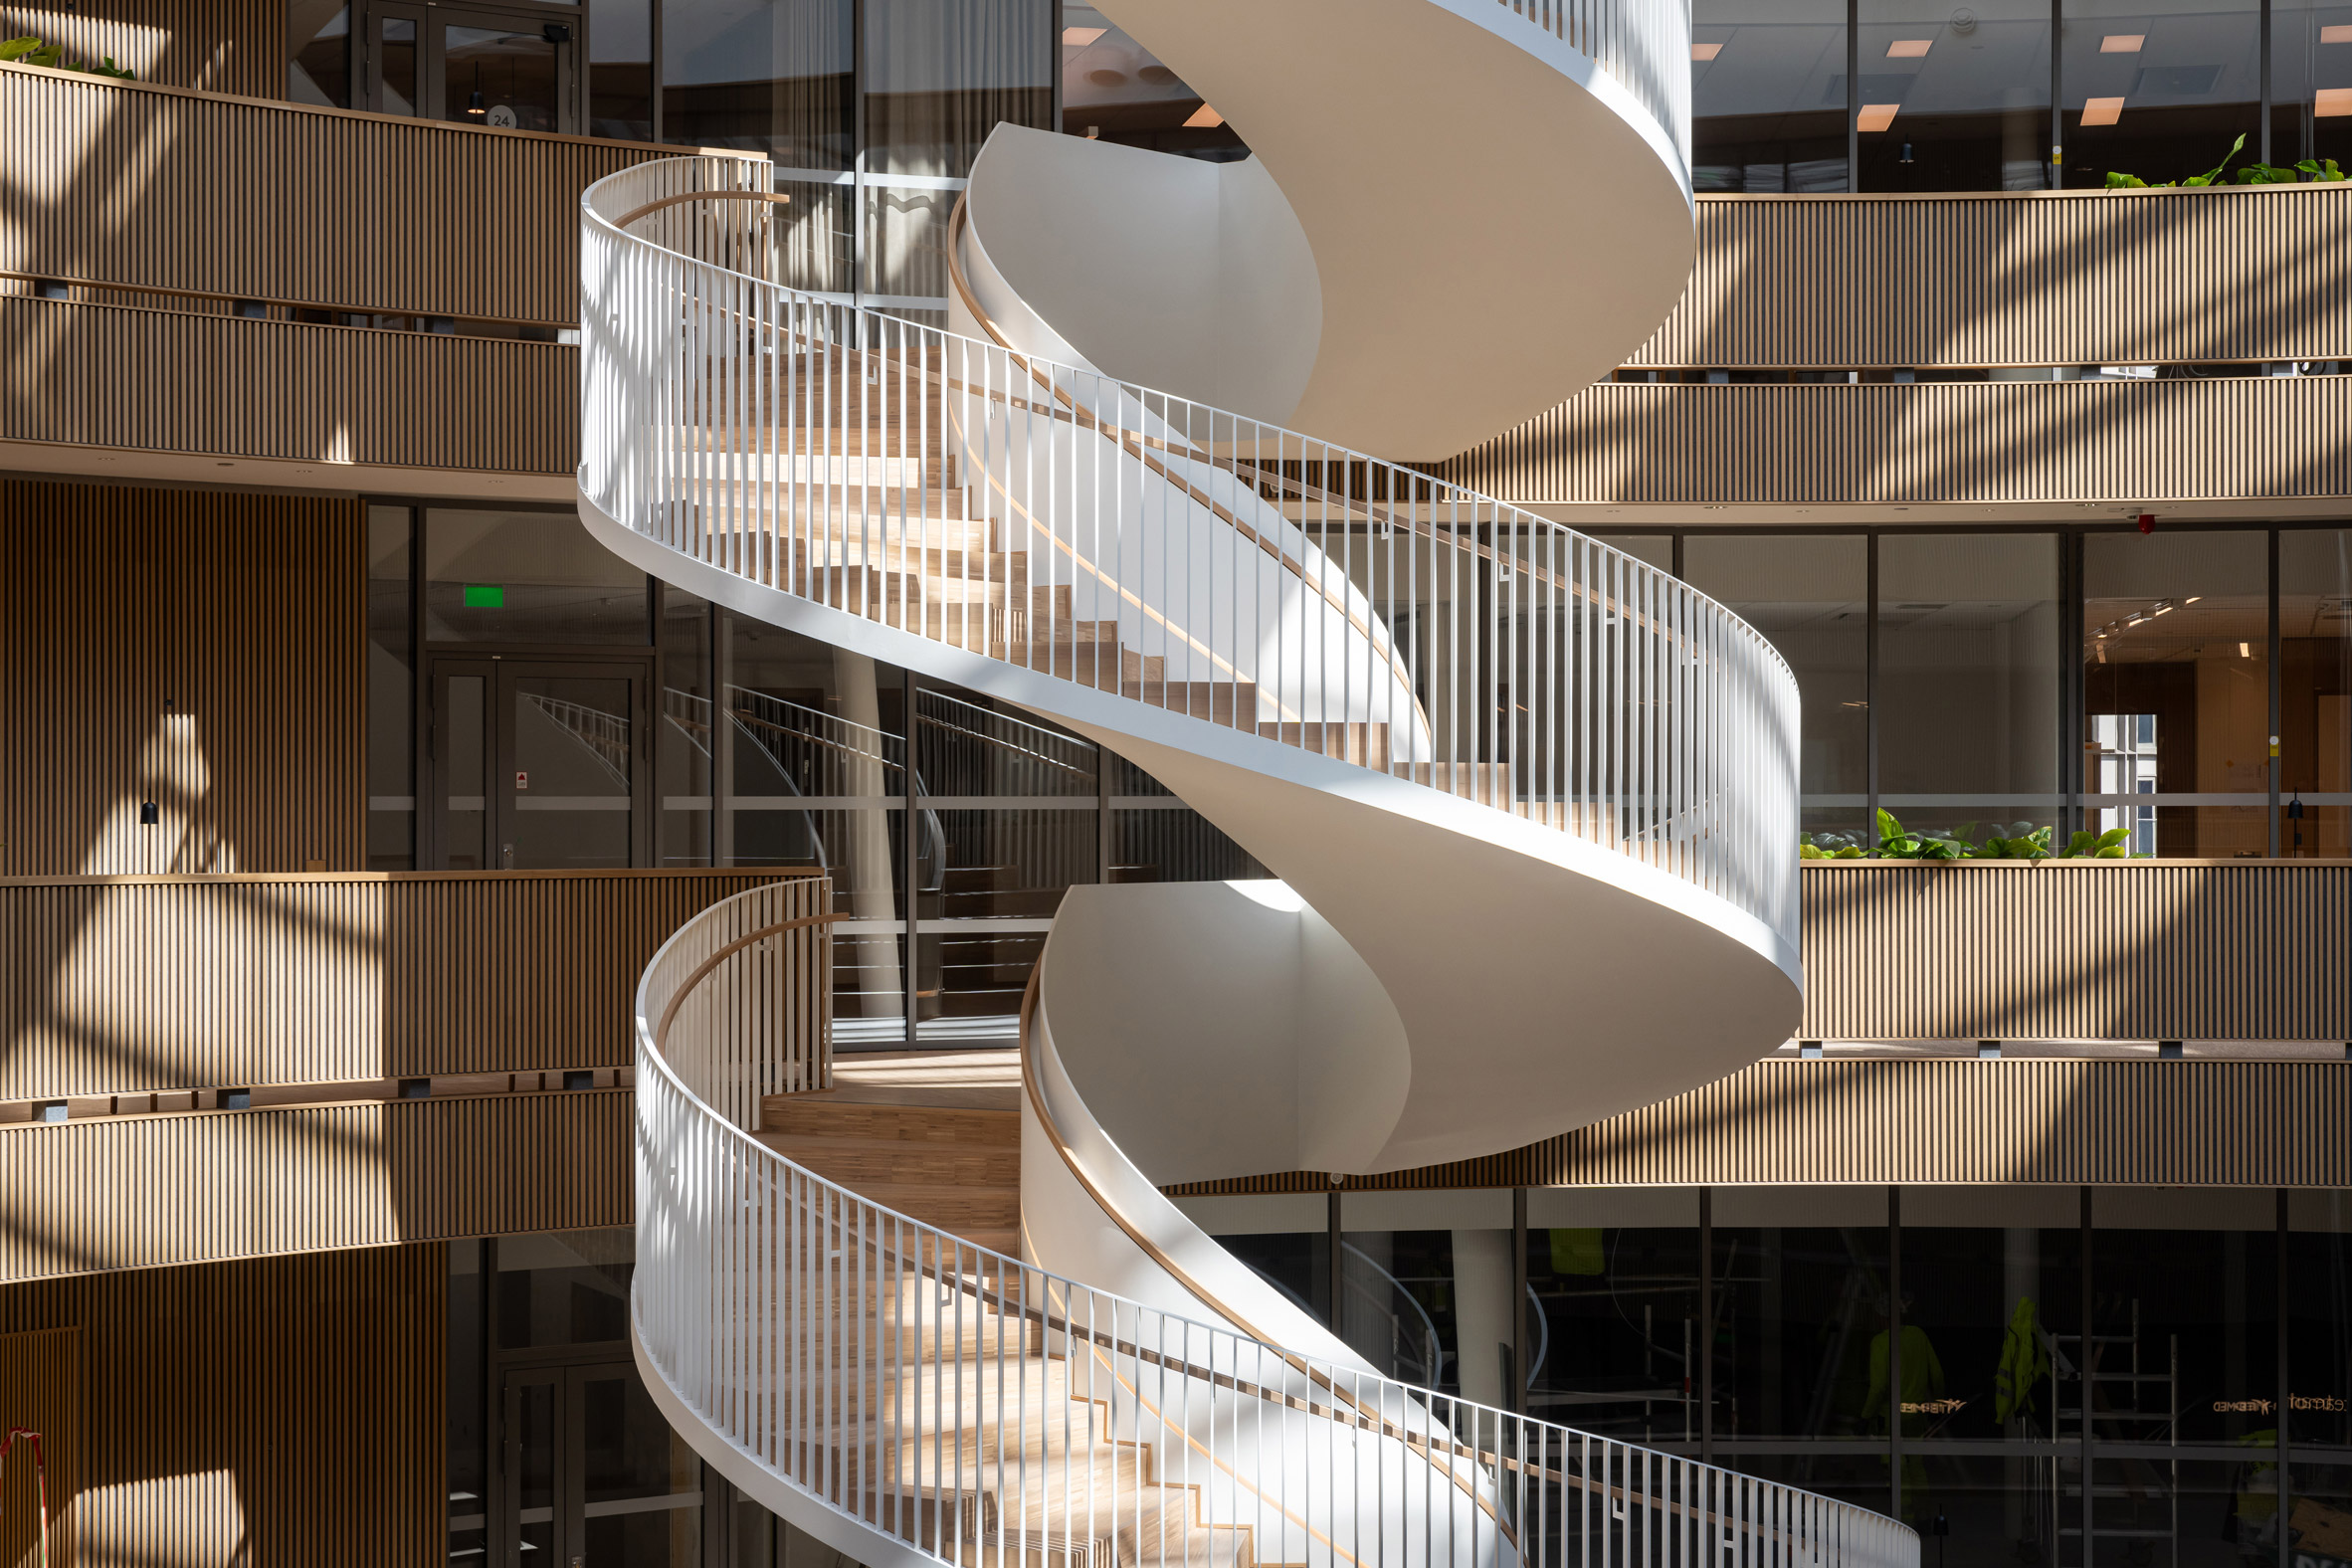 Wooden spiral staircase at Forskaren in Stockholm